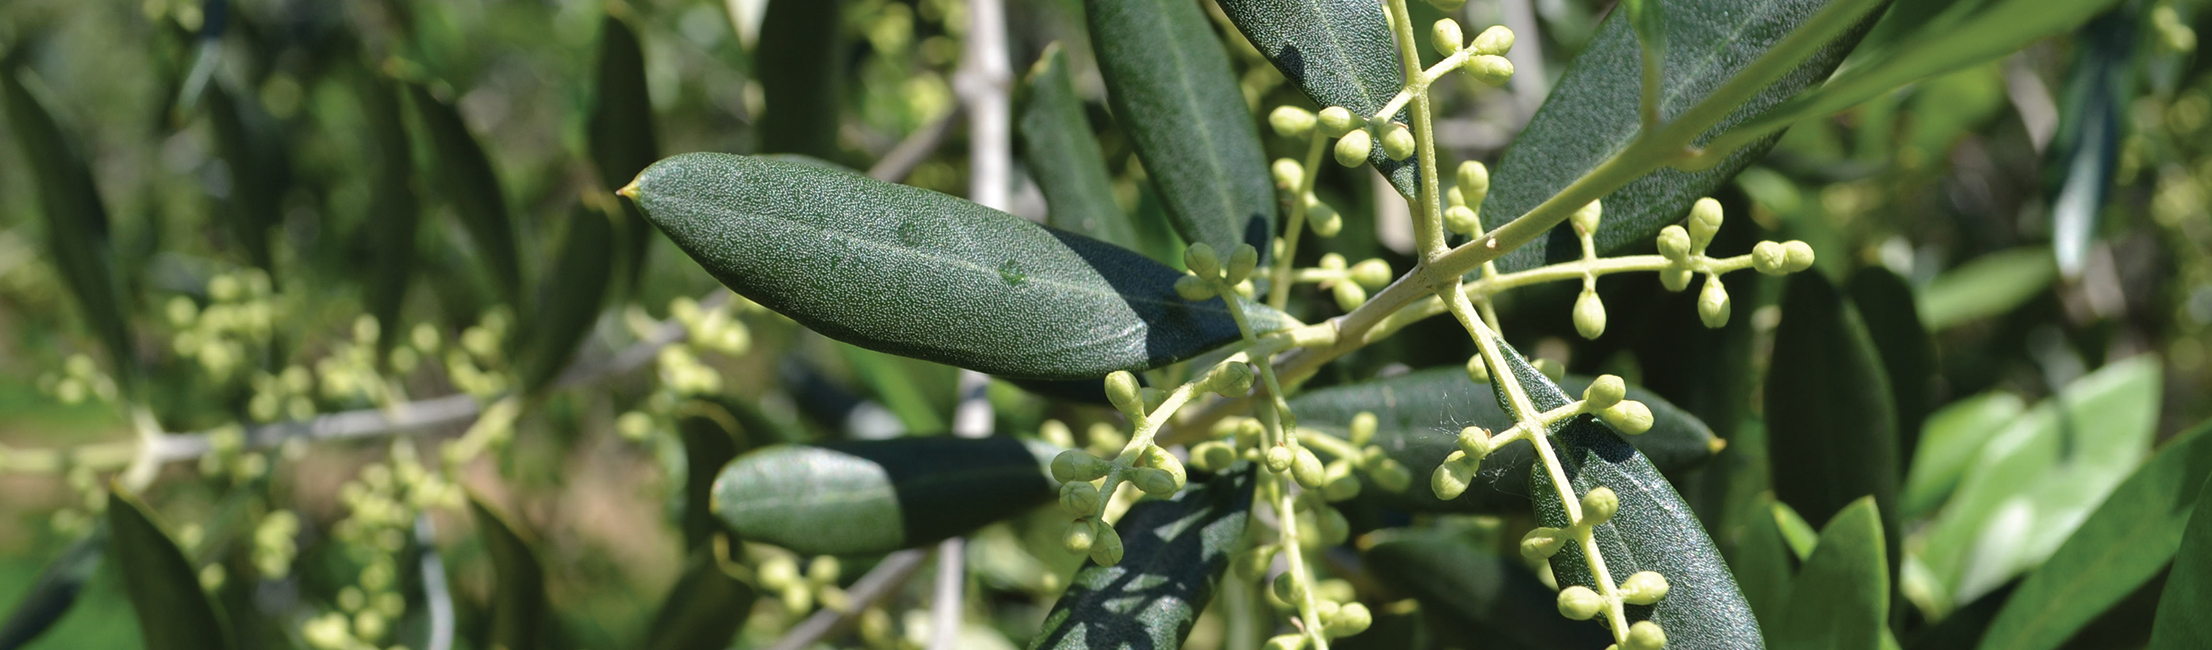 Quando e come concimare l’oliveto (bio e non)